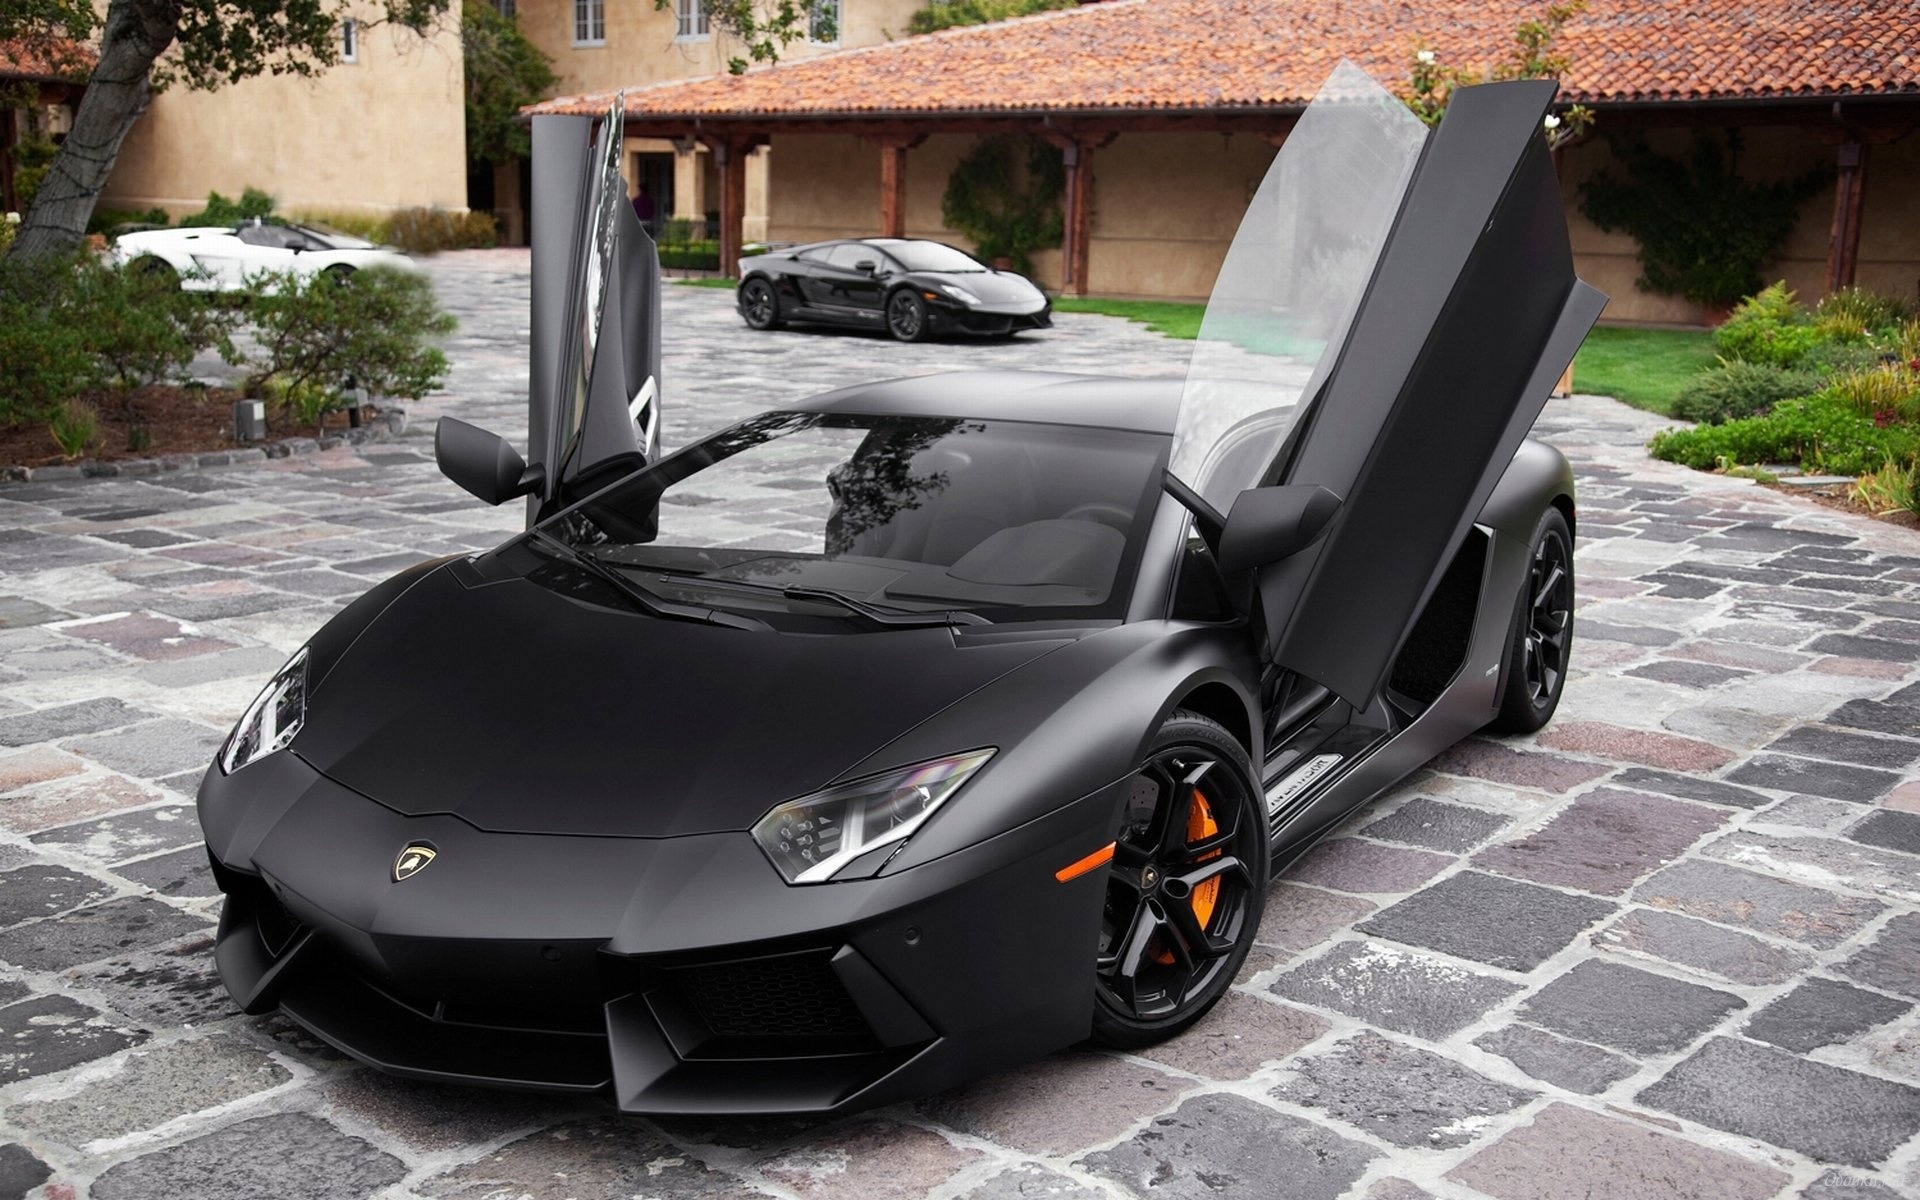 Black, Car, And Lamborghini Image - Lamborghini Aventador Open Doors - HD Wallpaper 